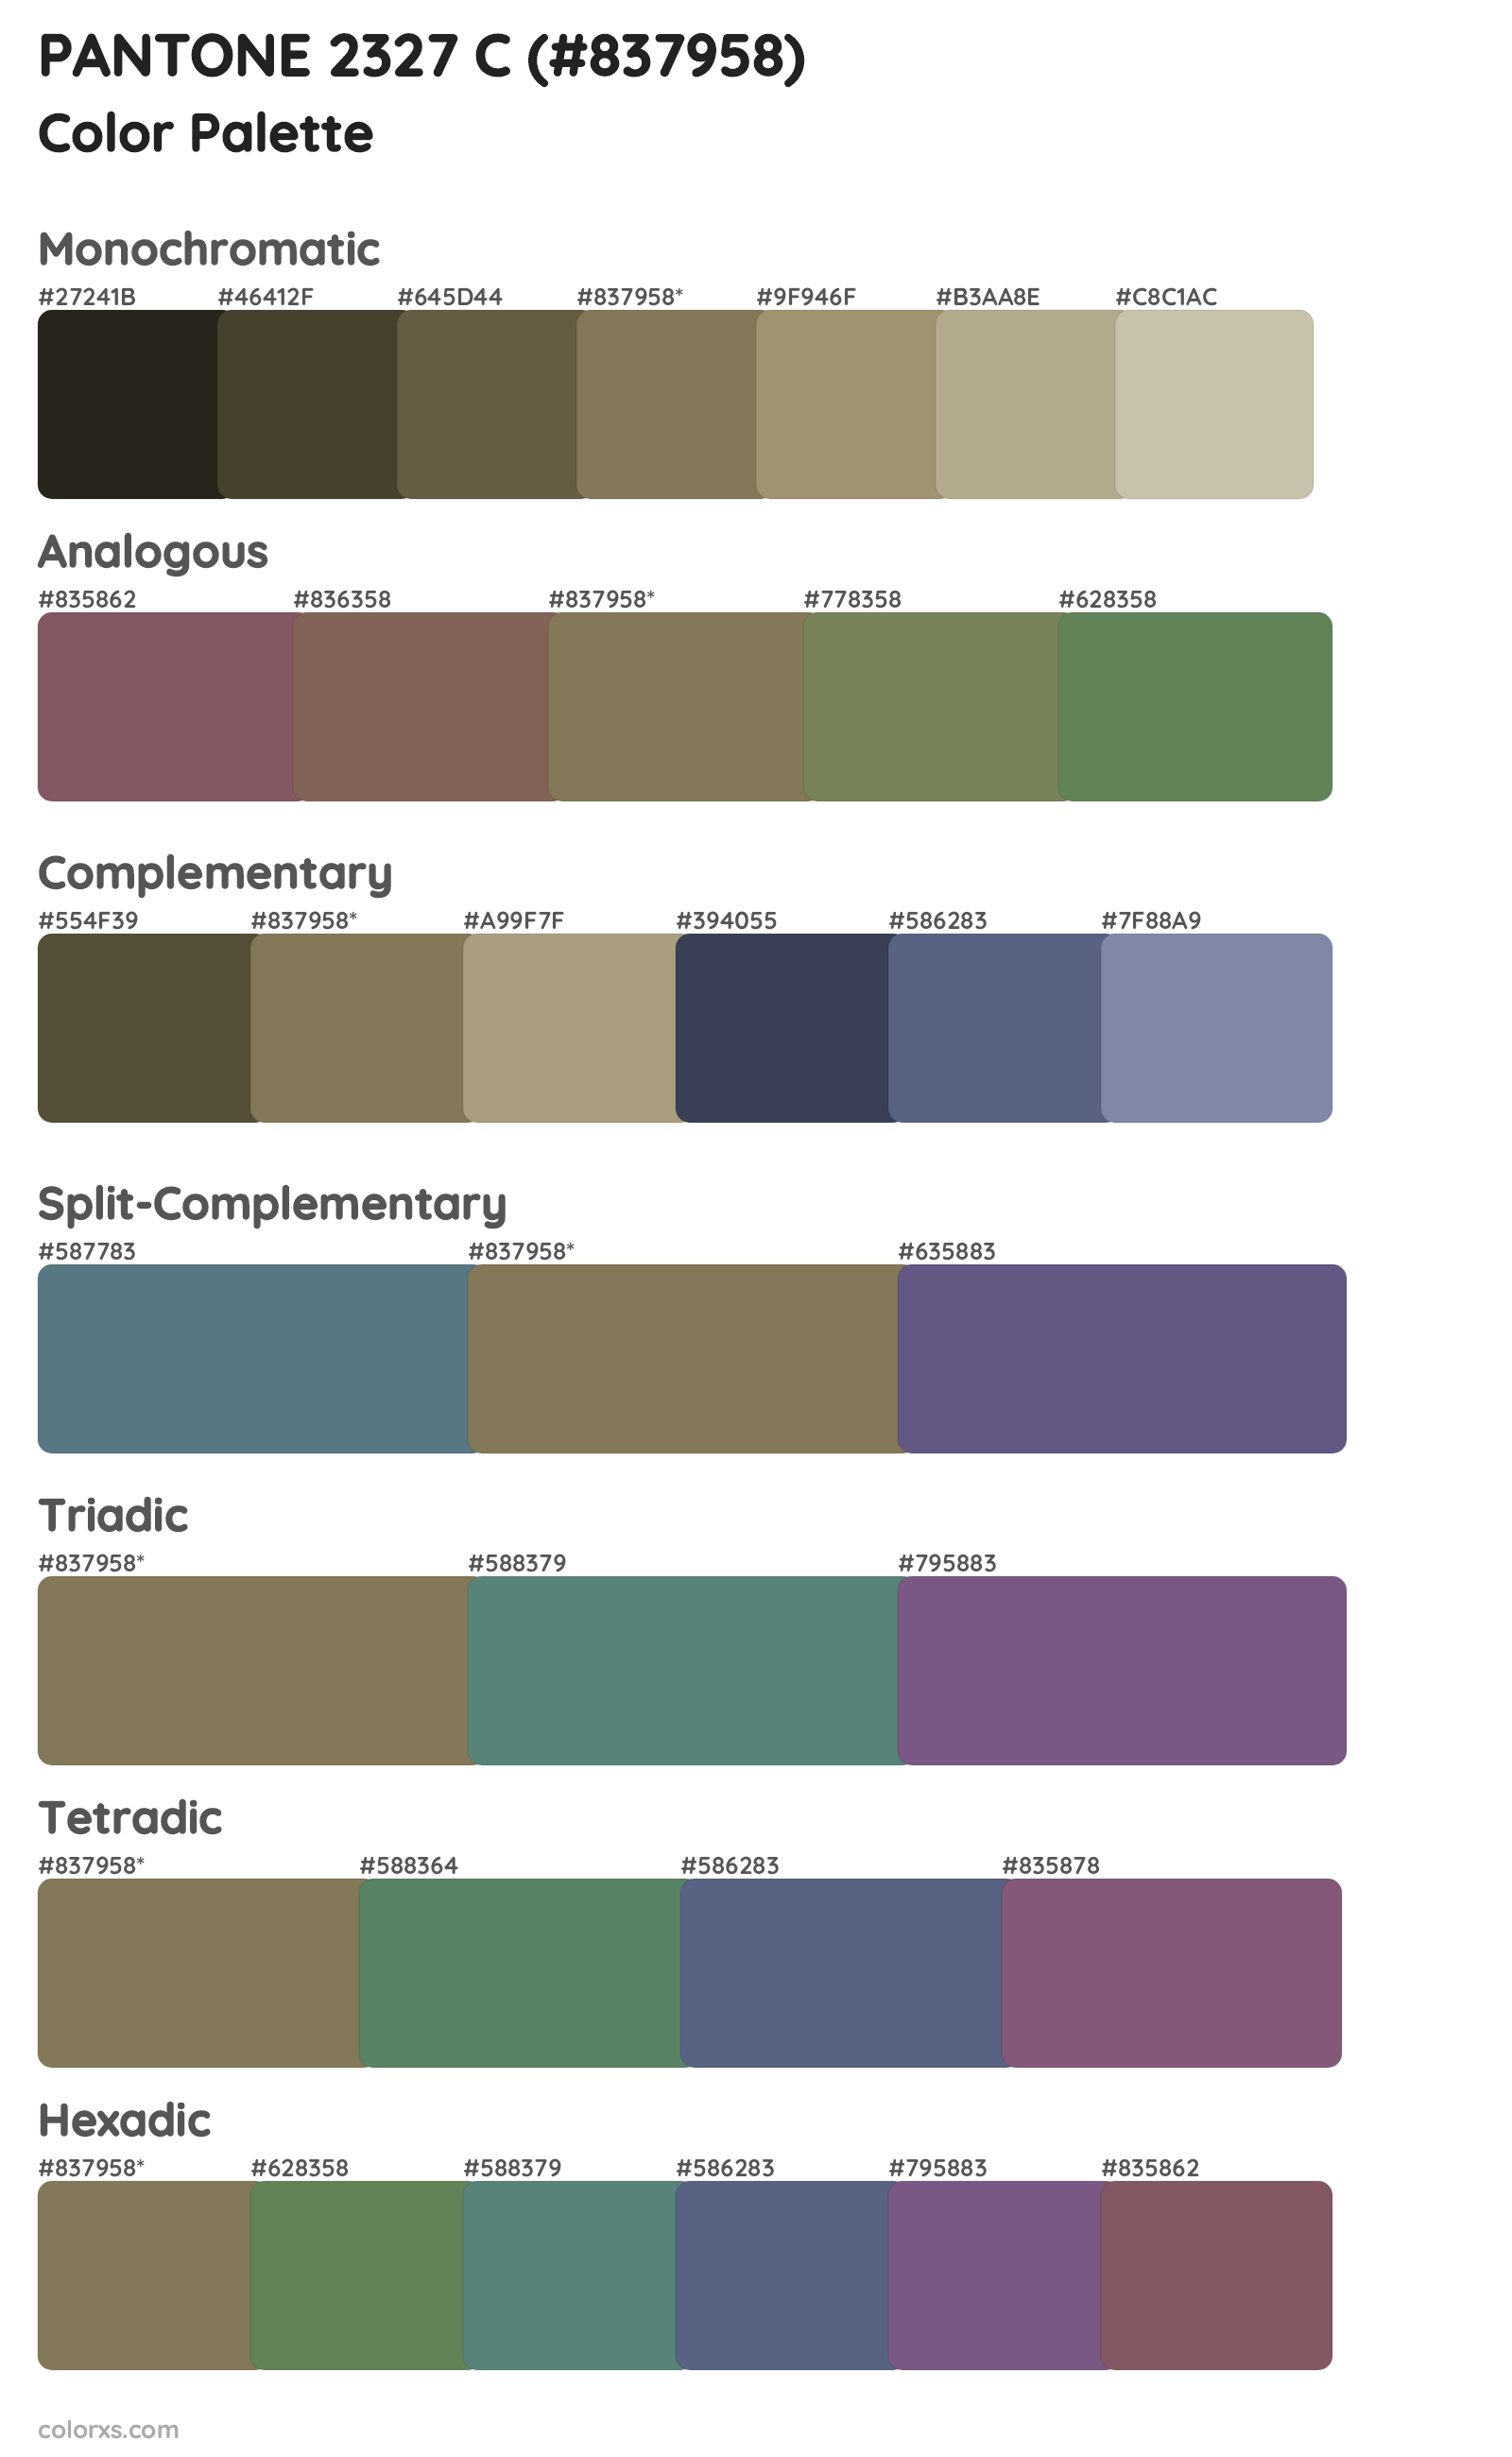 PANTONE 2327 C Color Scheme Palettes